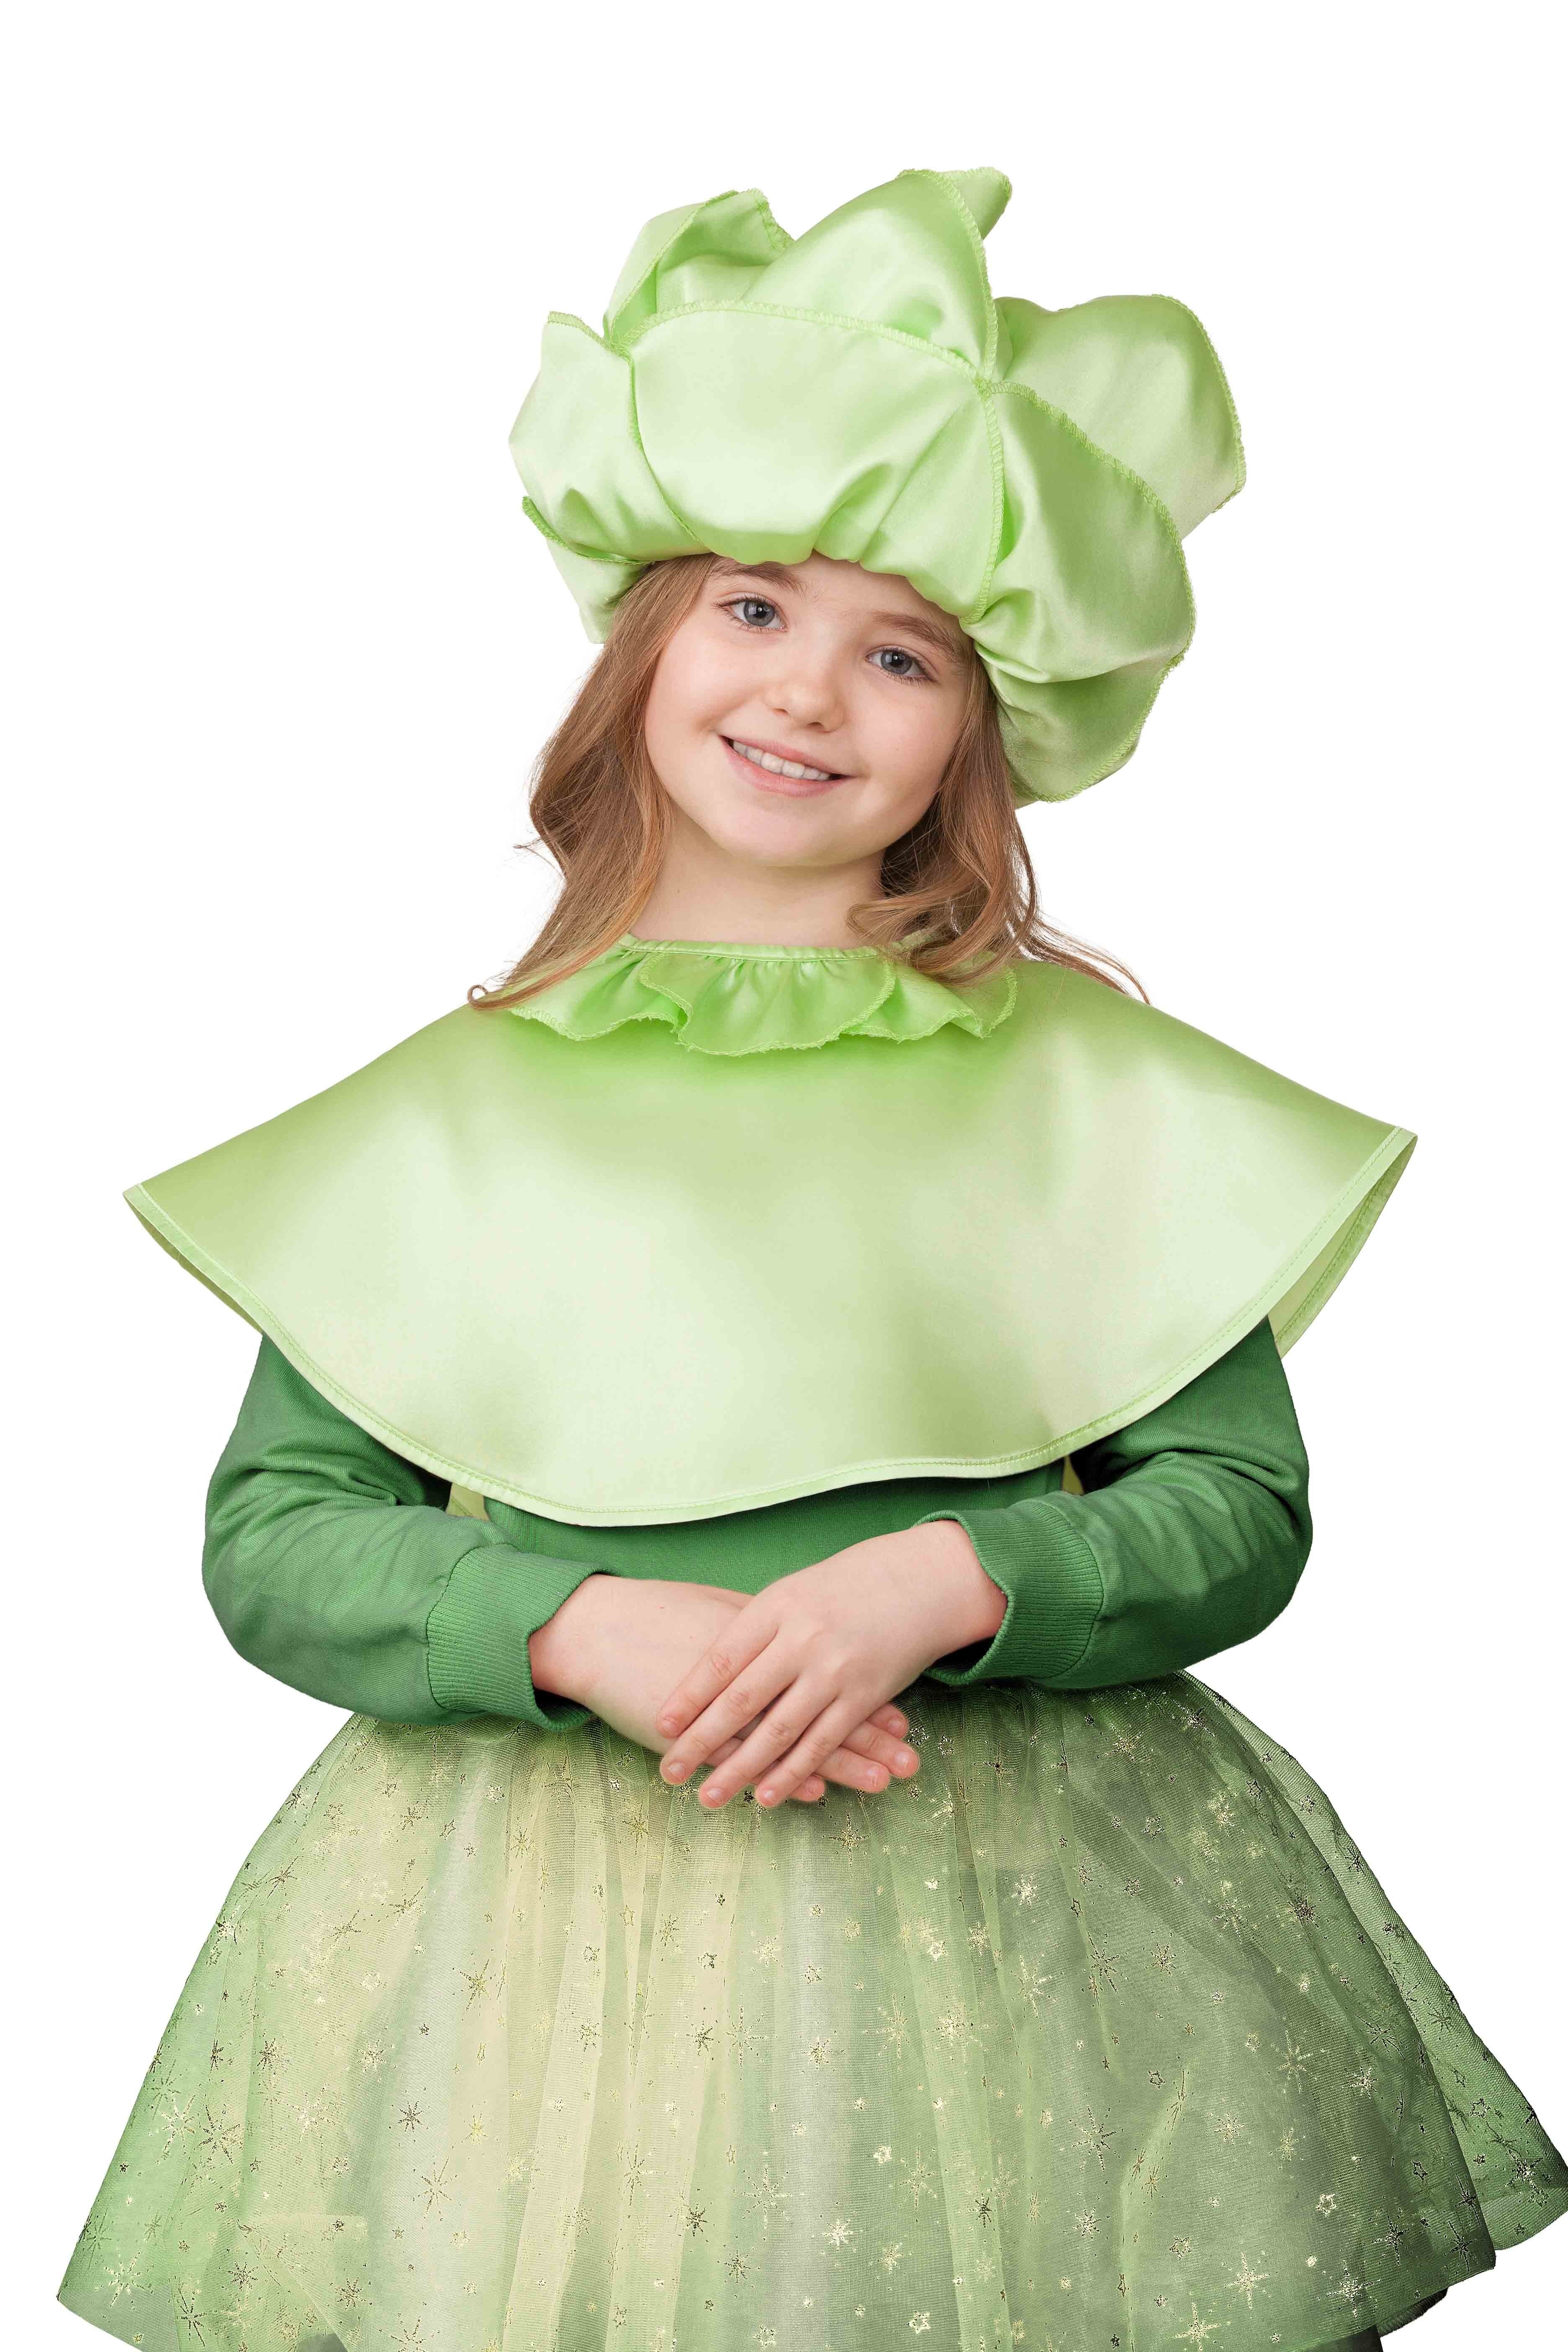 костюм капусты для девочки на праздник своими руками (выкройки, схемы, фото)